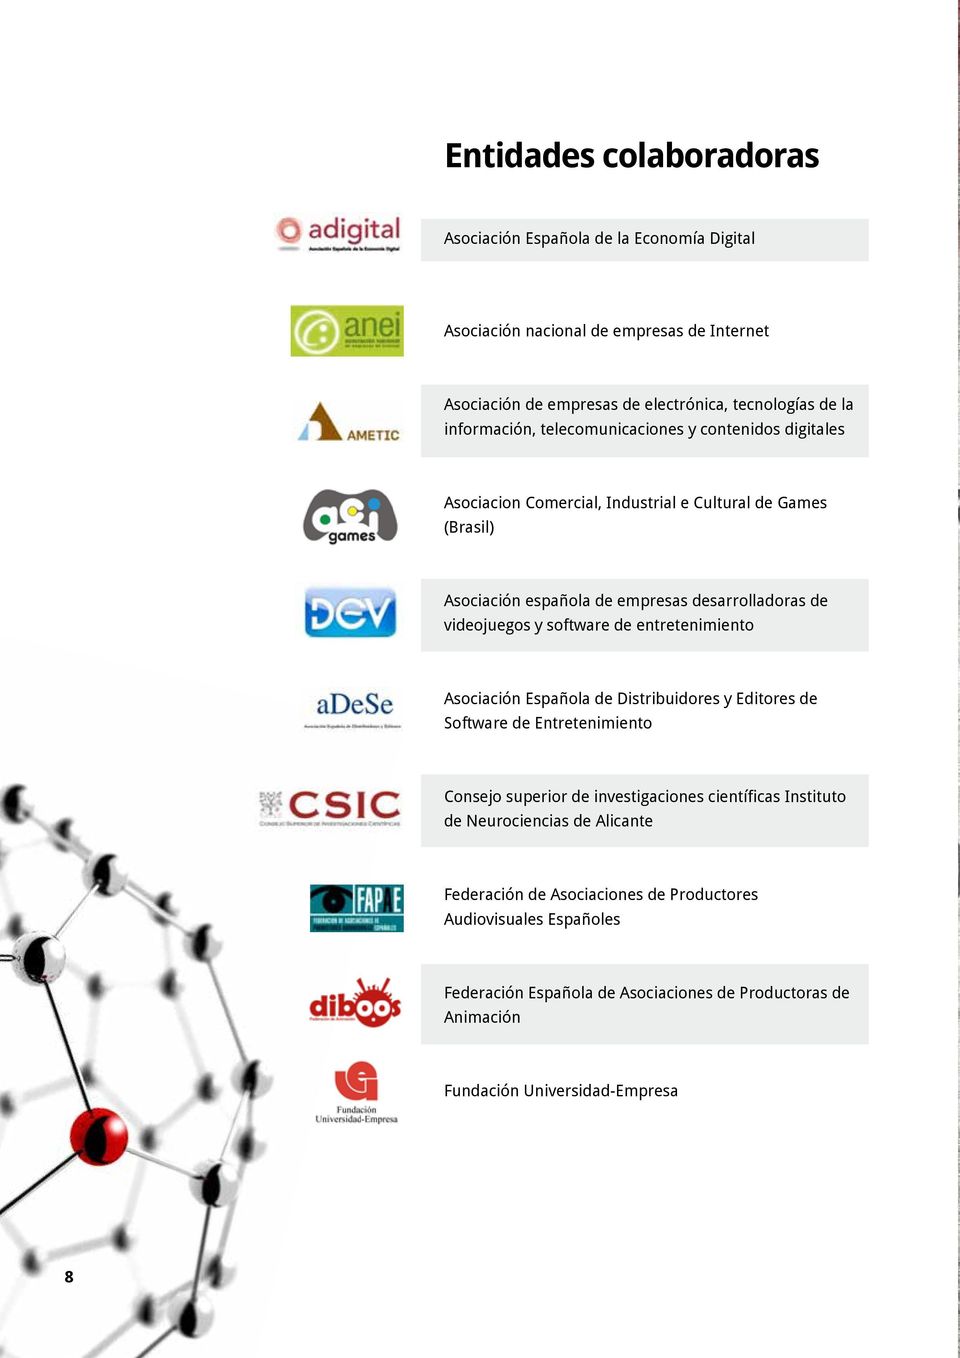 videojuegos y software de entretenimiento Asociación Española de Distribuidores y Editores de Software de Entretenimiento Consejo superior de investigaciones científicas